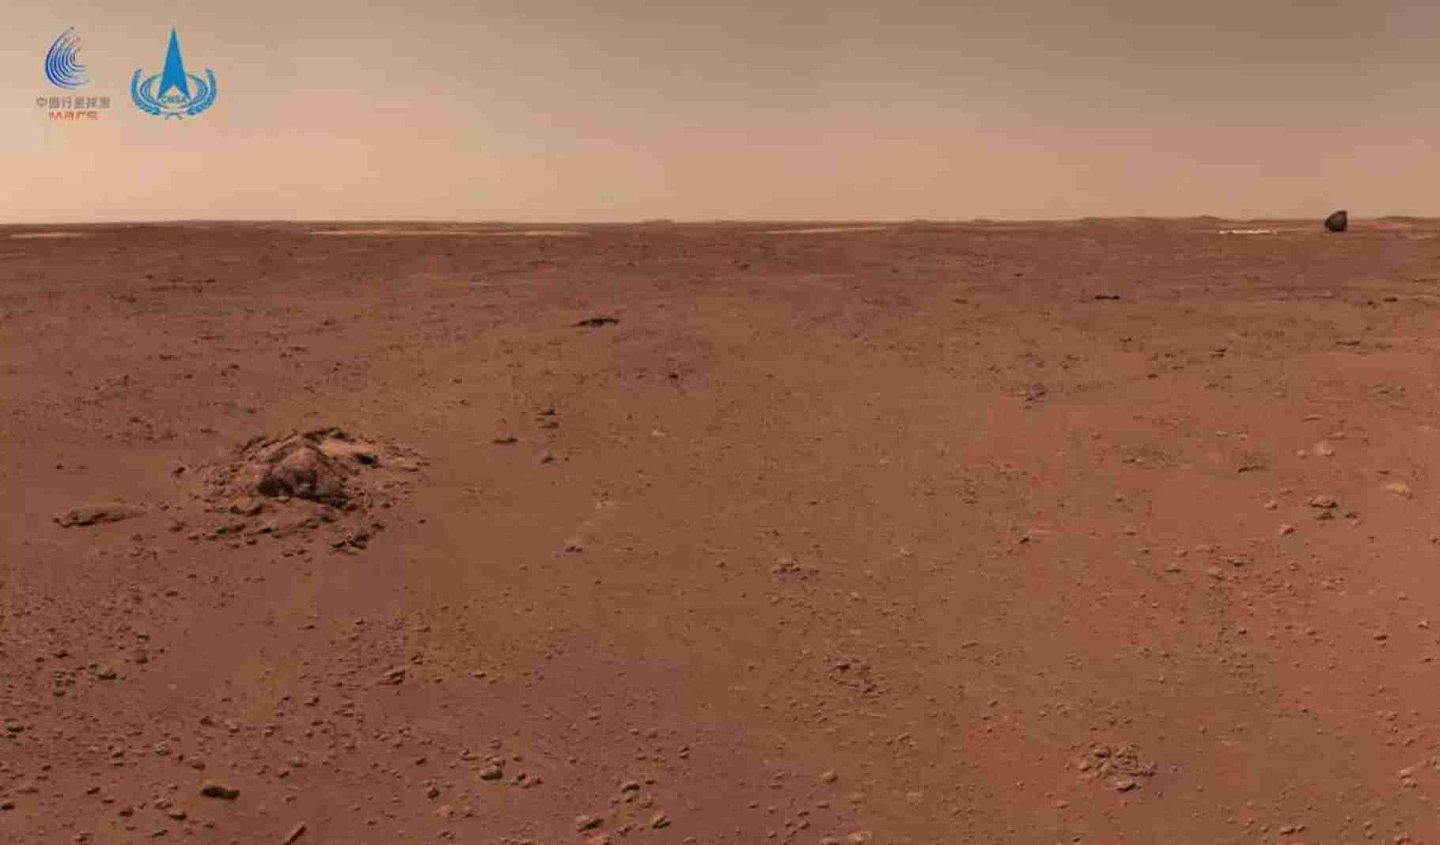 这是火星车拍摄的画面，图中左侧为一簇形状各异的石块，右上角可见背罩和降落伞，成像时火星车距离着陆点直线距离约210米，距离背罩和降落伞约130米。（微信@中国探月工程）